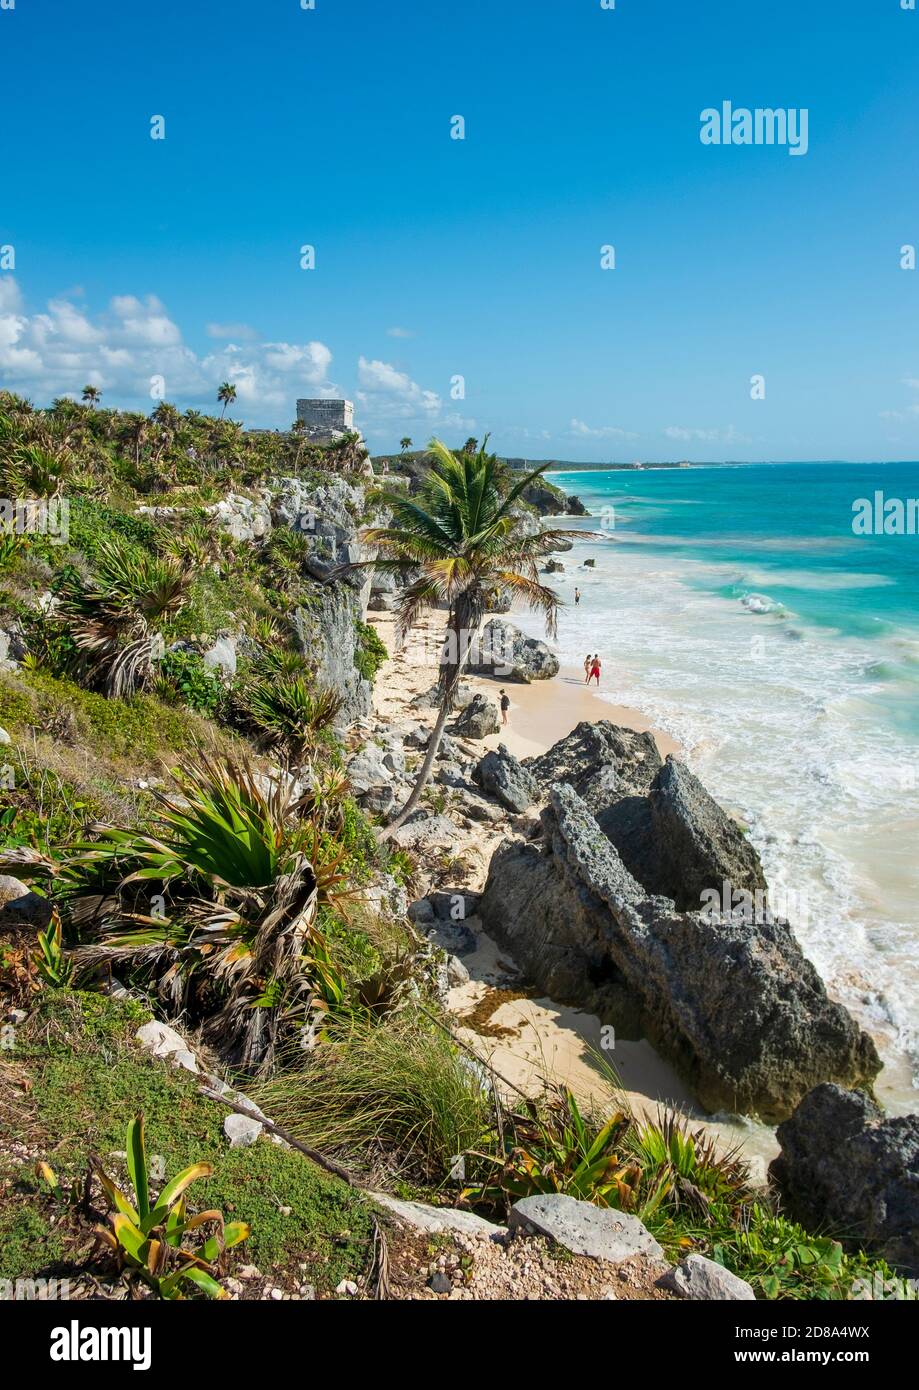 Tulum, Mexiko - 12. März 2020: Touristen an einem karibischen Strand in Tulum, Yucatan, Mexiko. Auf der Klippe in der Ferne ist einer der Tempel der Stockfoto